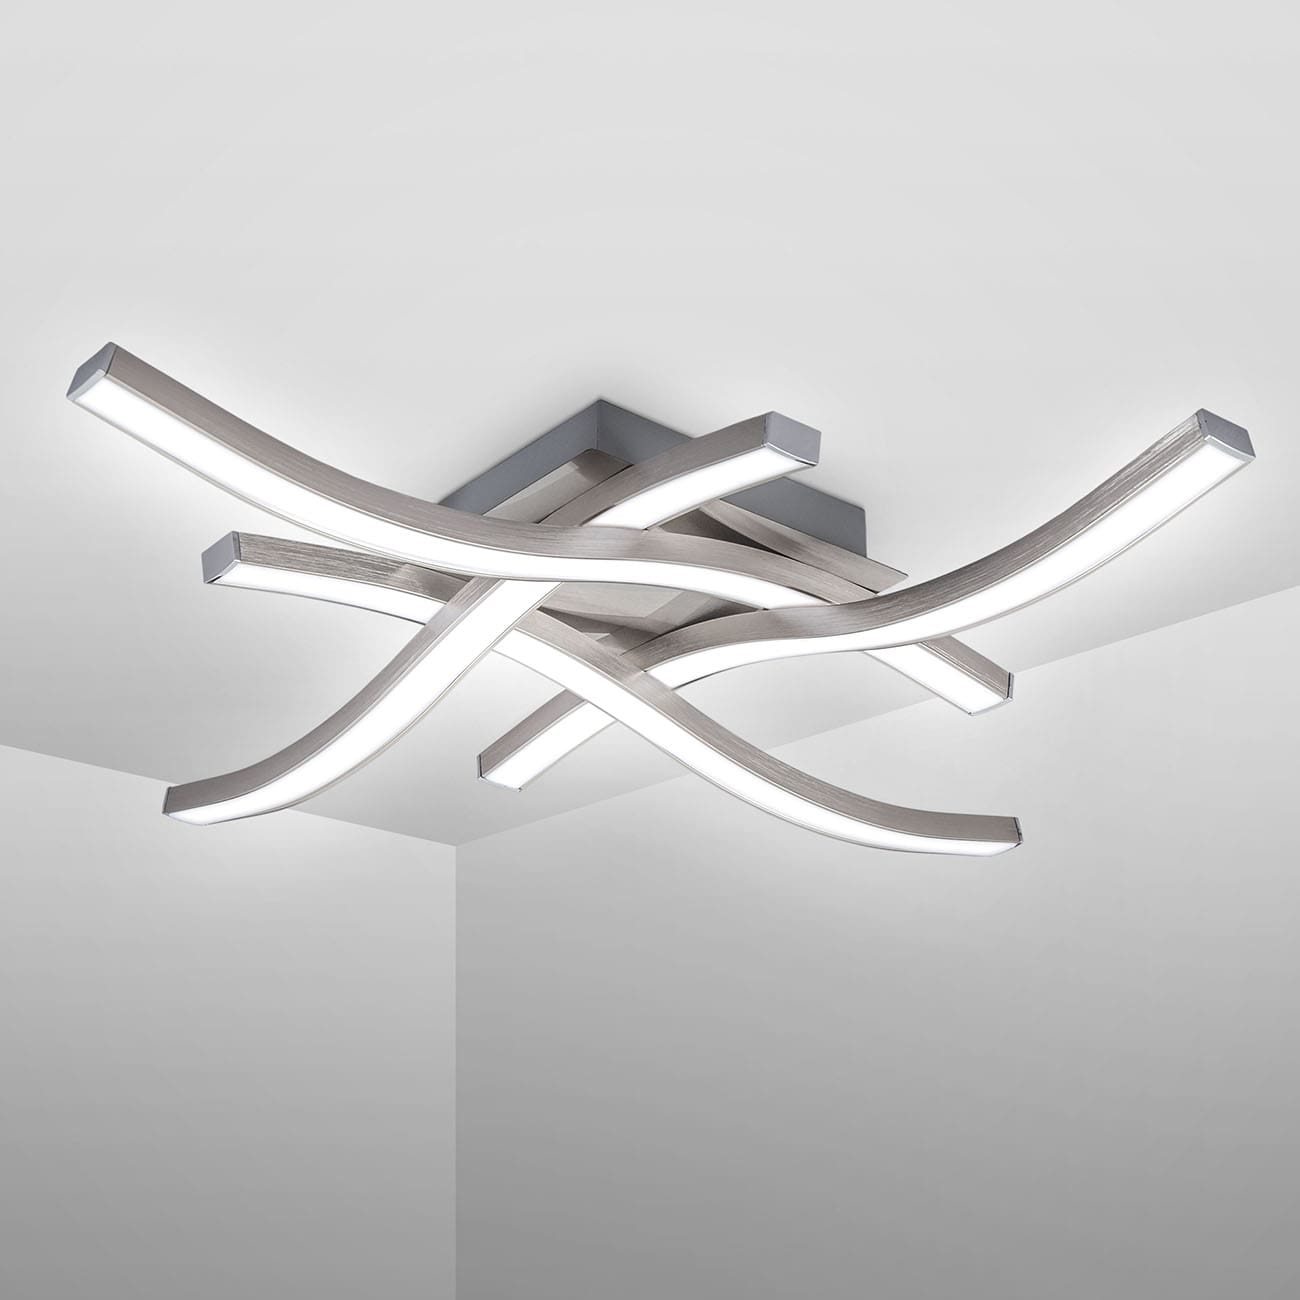 LED Deckenleuchte 42x42cm  - 4-flammig - Design-Deckenlampe Wohnzimmer Küche Flur flach 95mm 230V 17W 1520lm 4000K neutralweiß | nickel-matt - 3